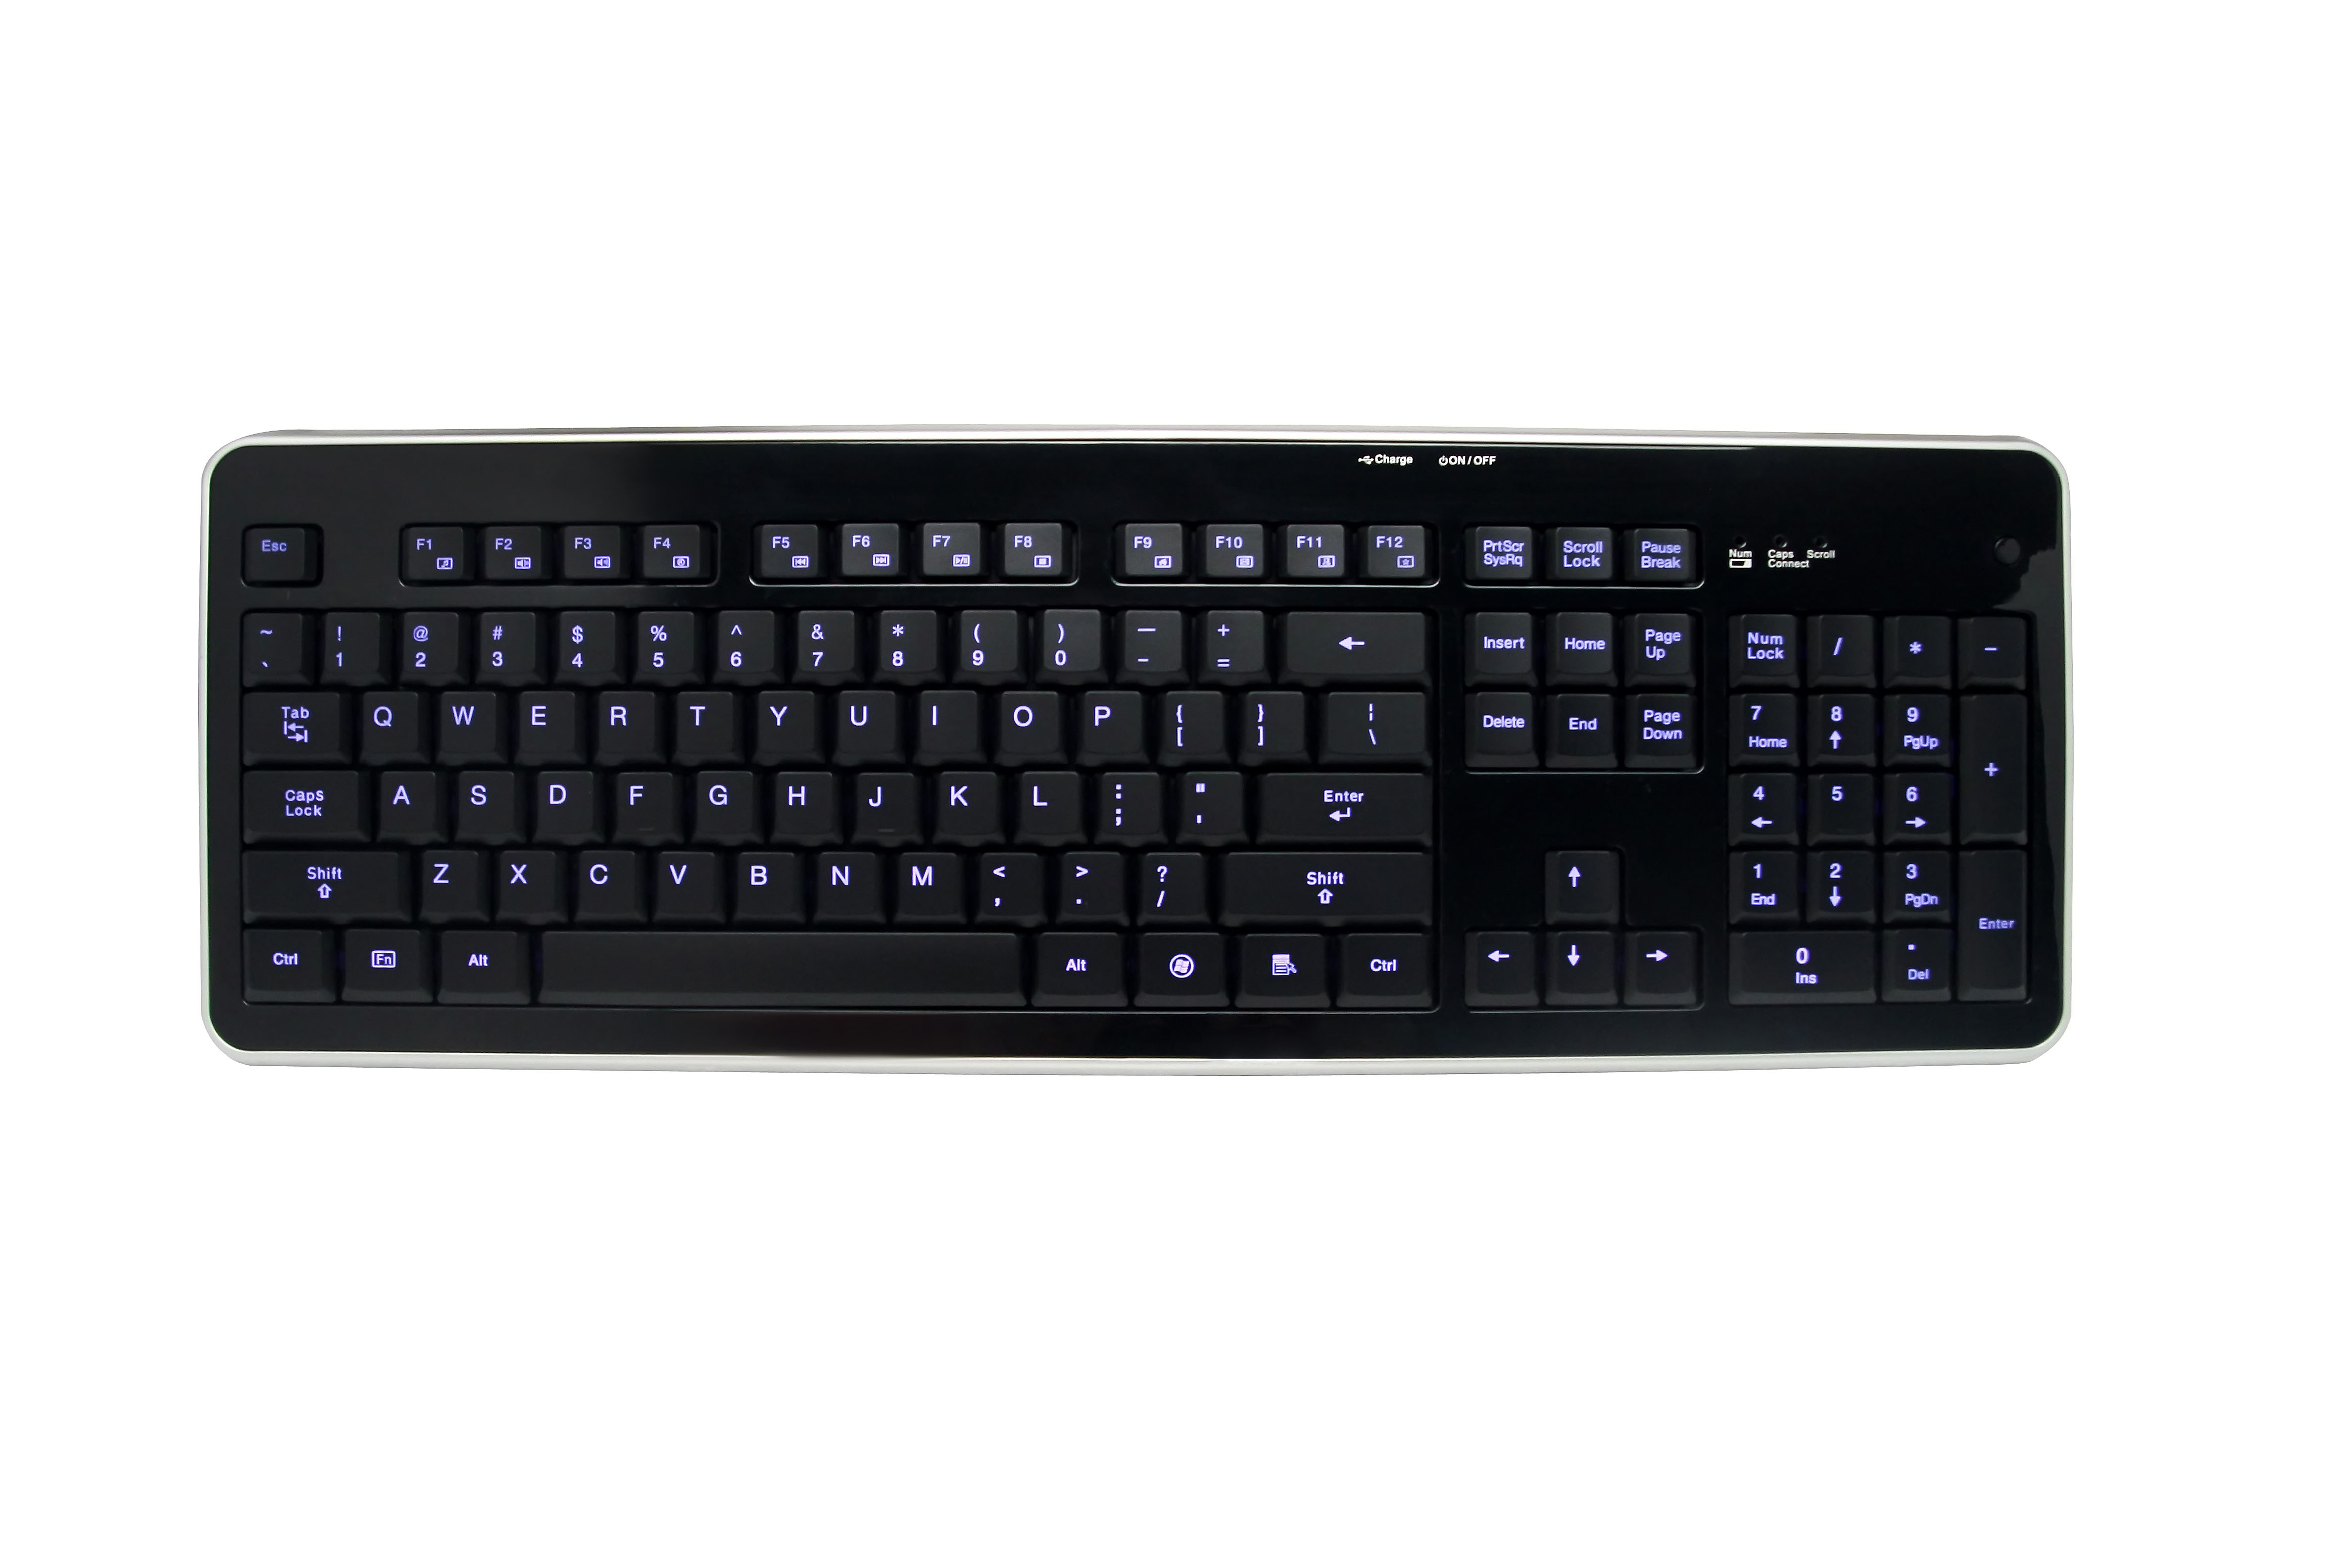 Border color choice Led Illuminated Keyboard